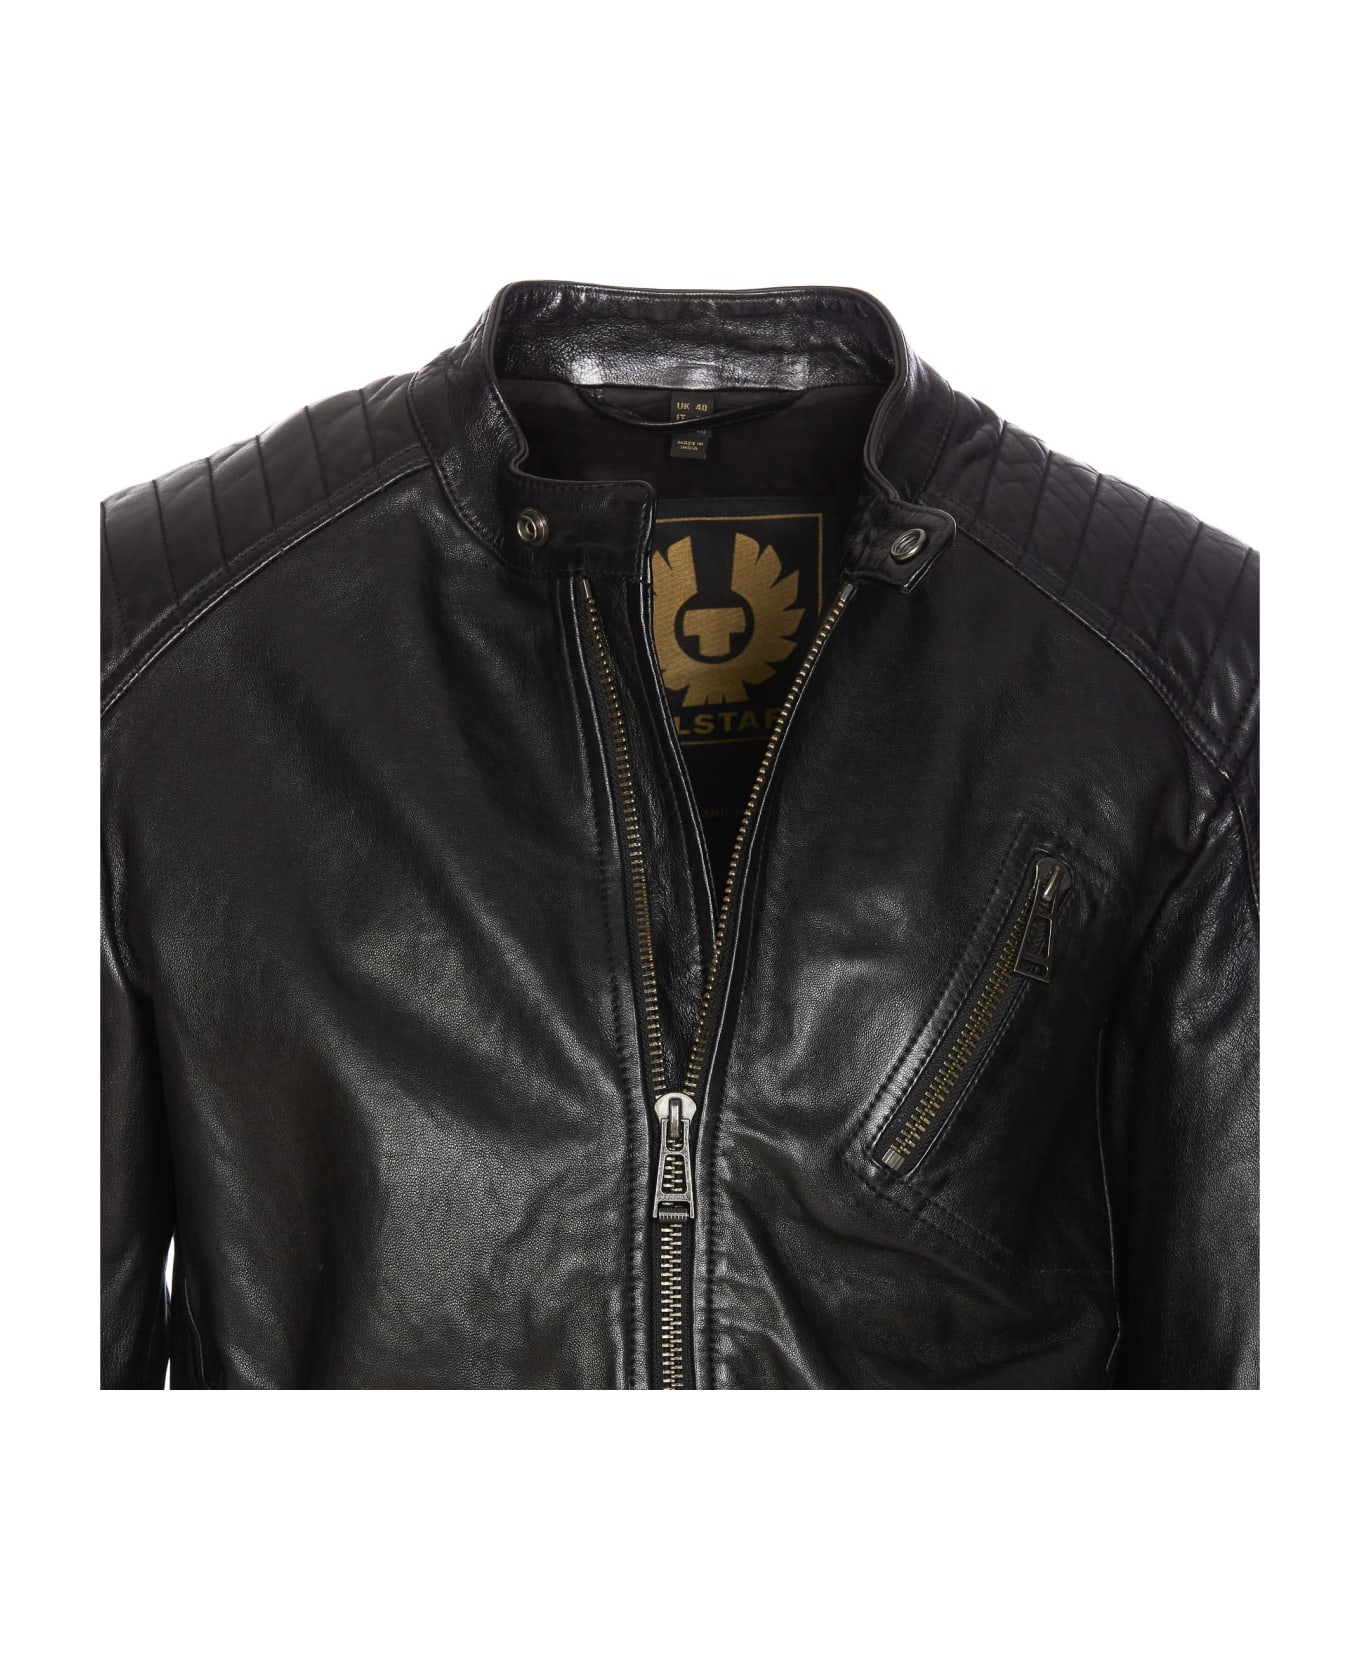 Belstaff V Racer Leather Jacket - Black